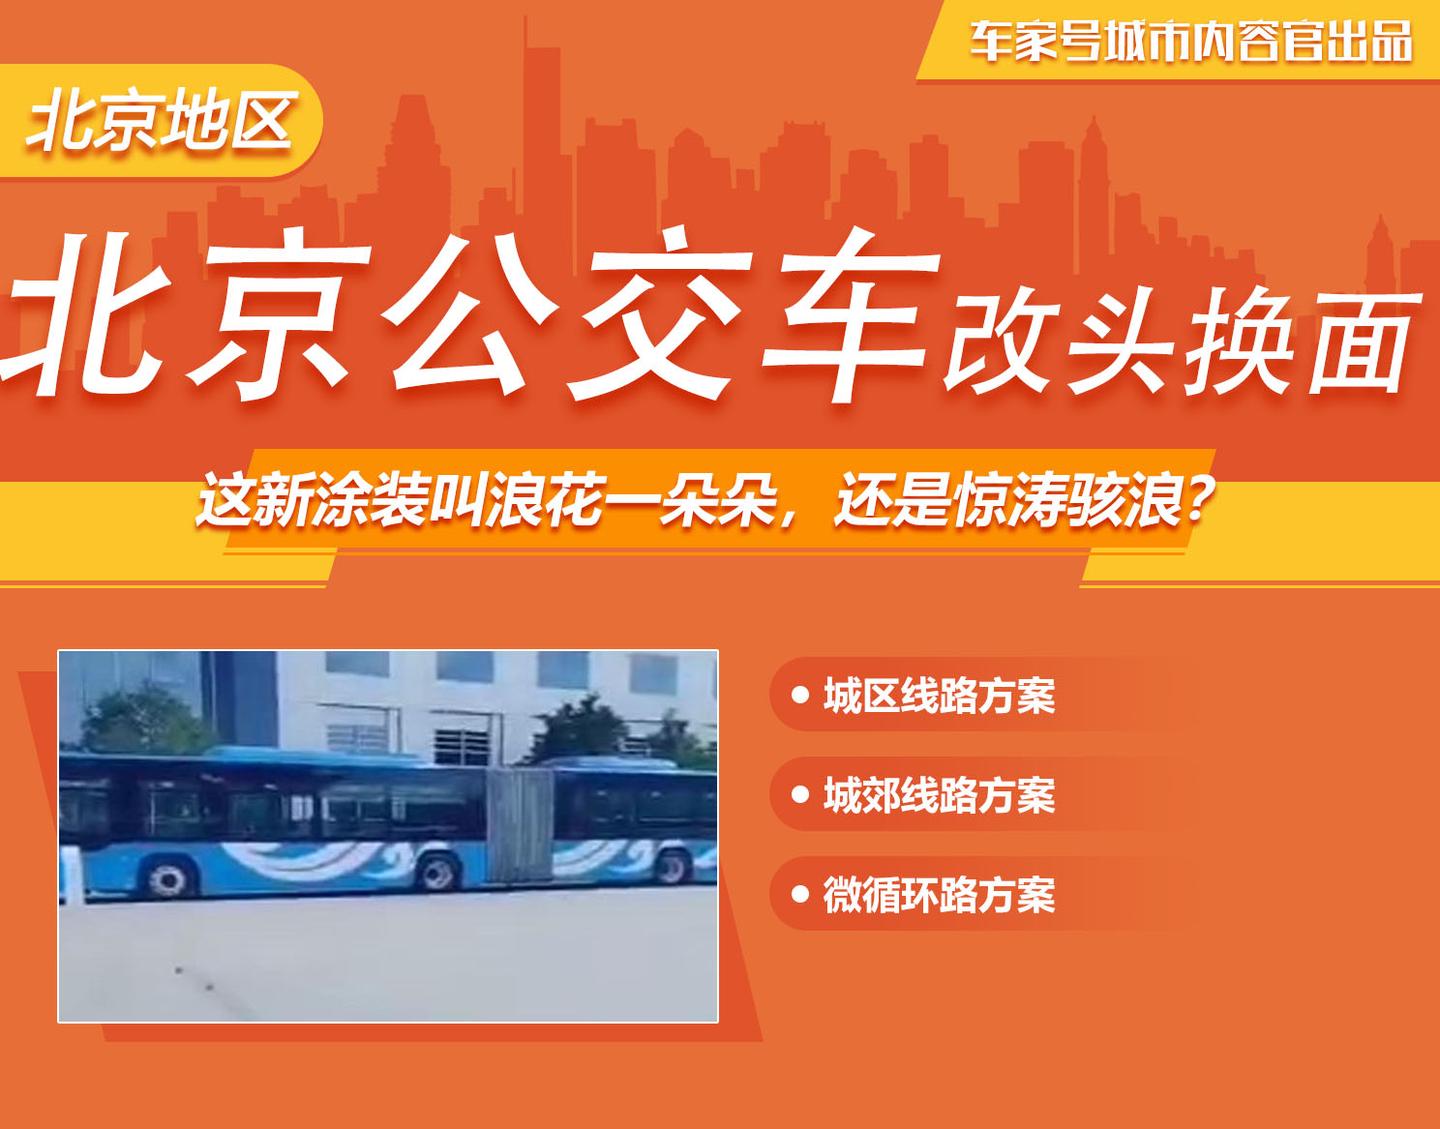 北京公交车将改头换面,这新涂装叫浪花一朵朵,还是惊涛骇浪?